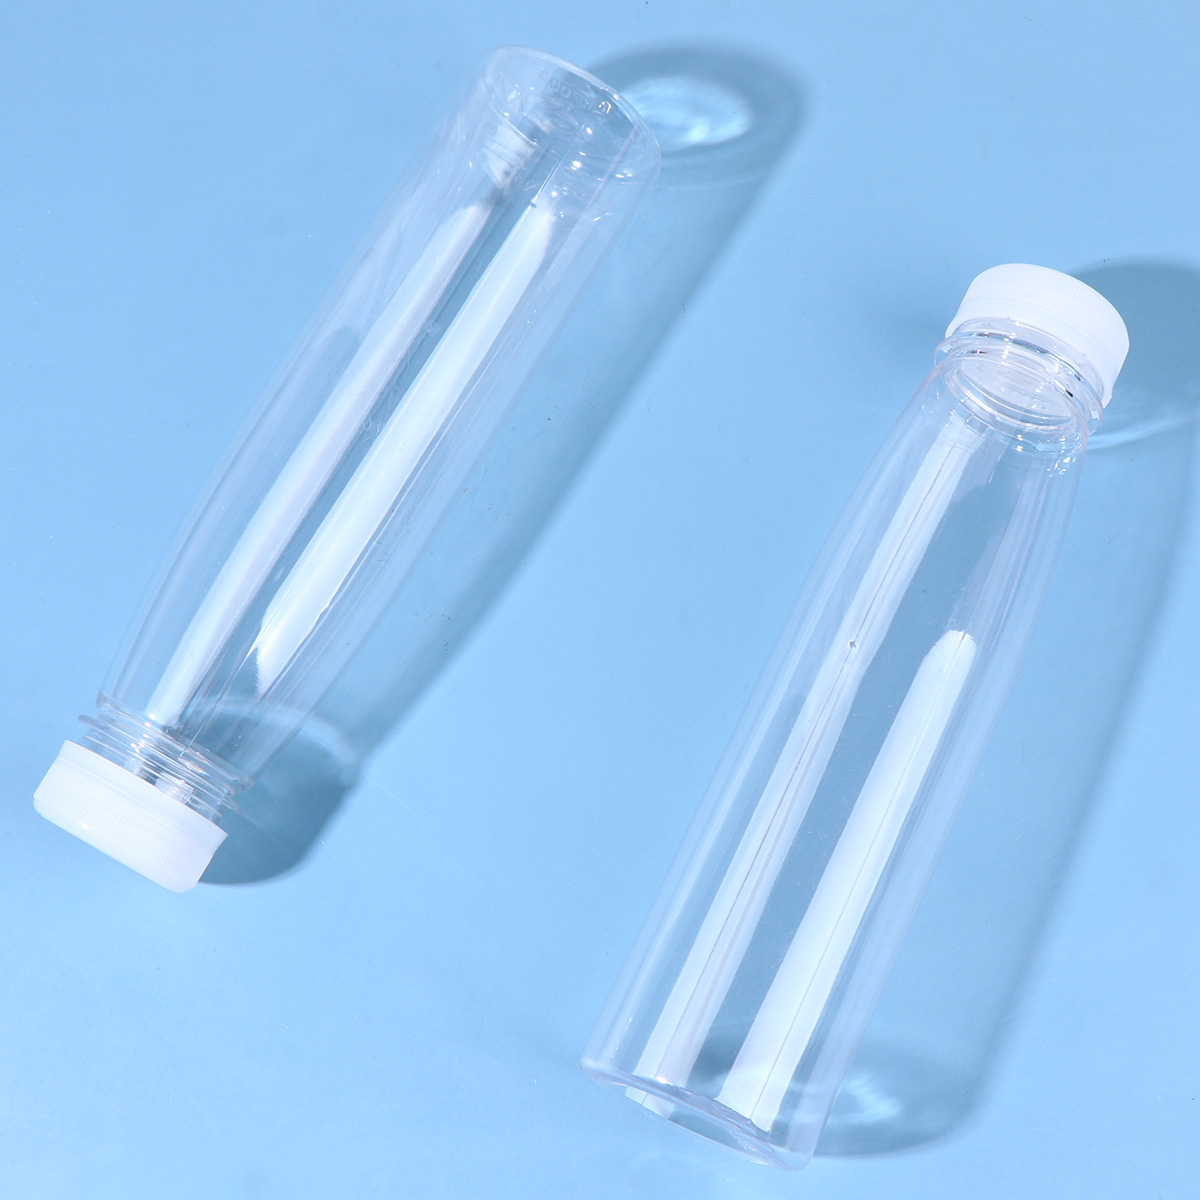 Hemoton 10PCS 330ml Empty Storage Containers Clear PET Bottles Plastic Beverage Drink Bottle Juice Bottle Jar with Lids (Random Color Caps) - image 5 of 6